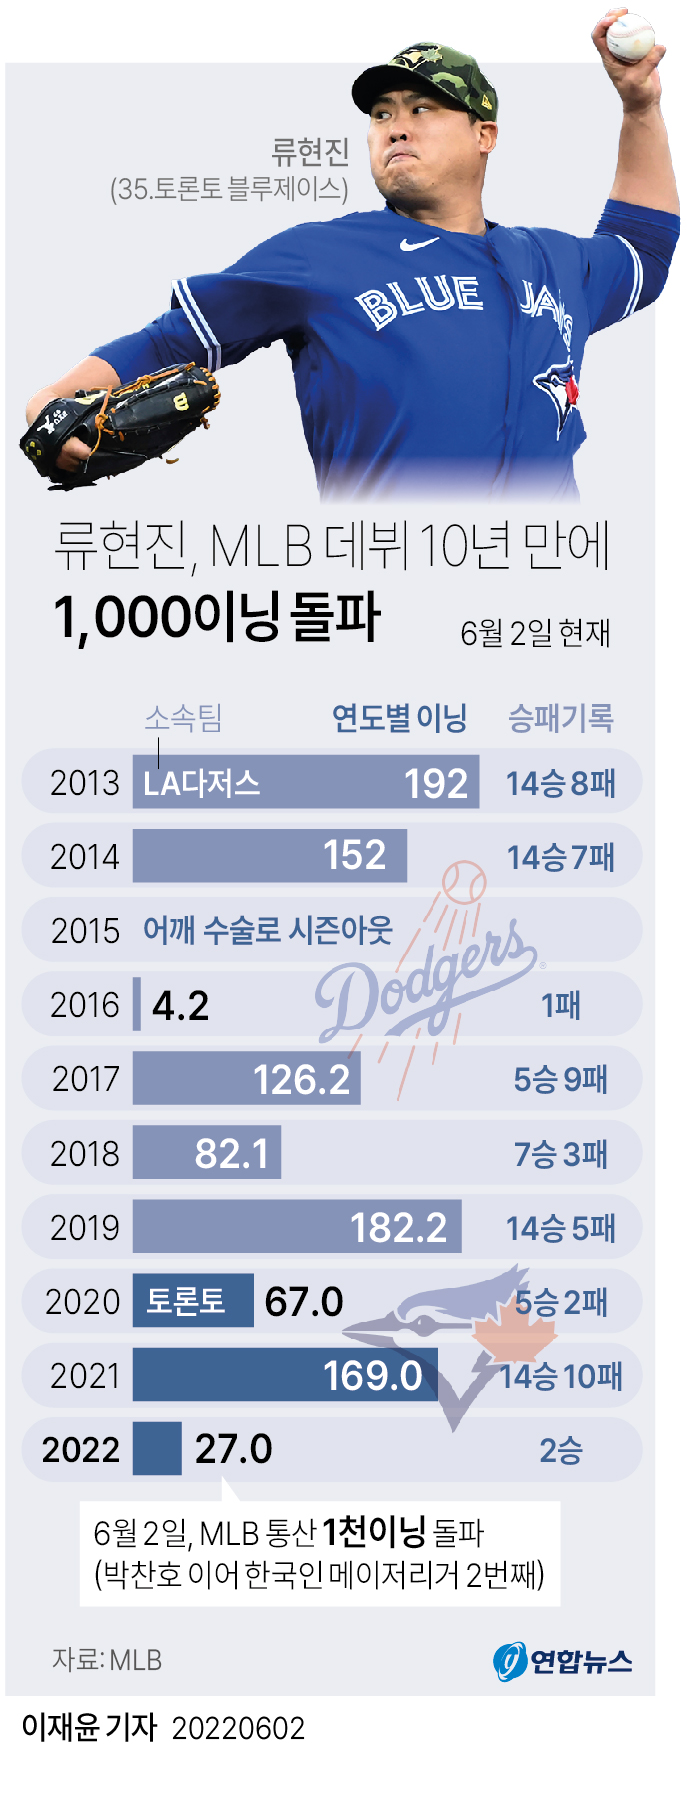 [그래픽] 류현진 MLB 데뷔 10년 만에 1,000이닝 돌파